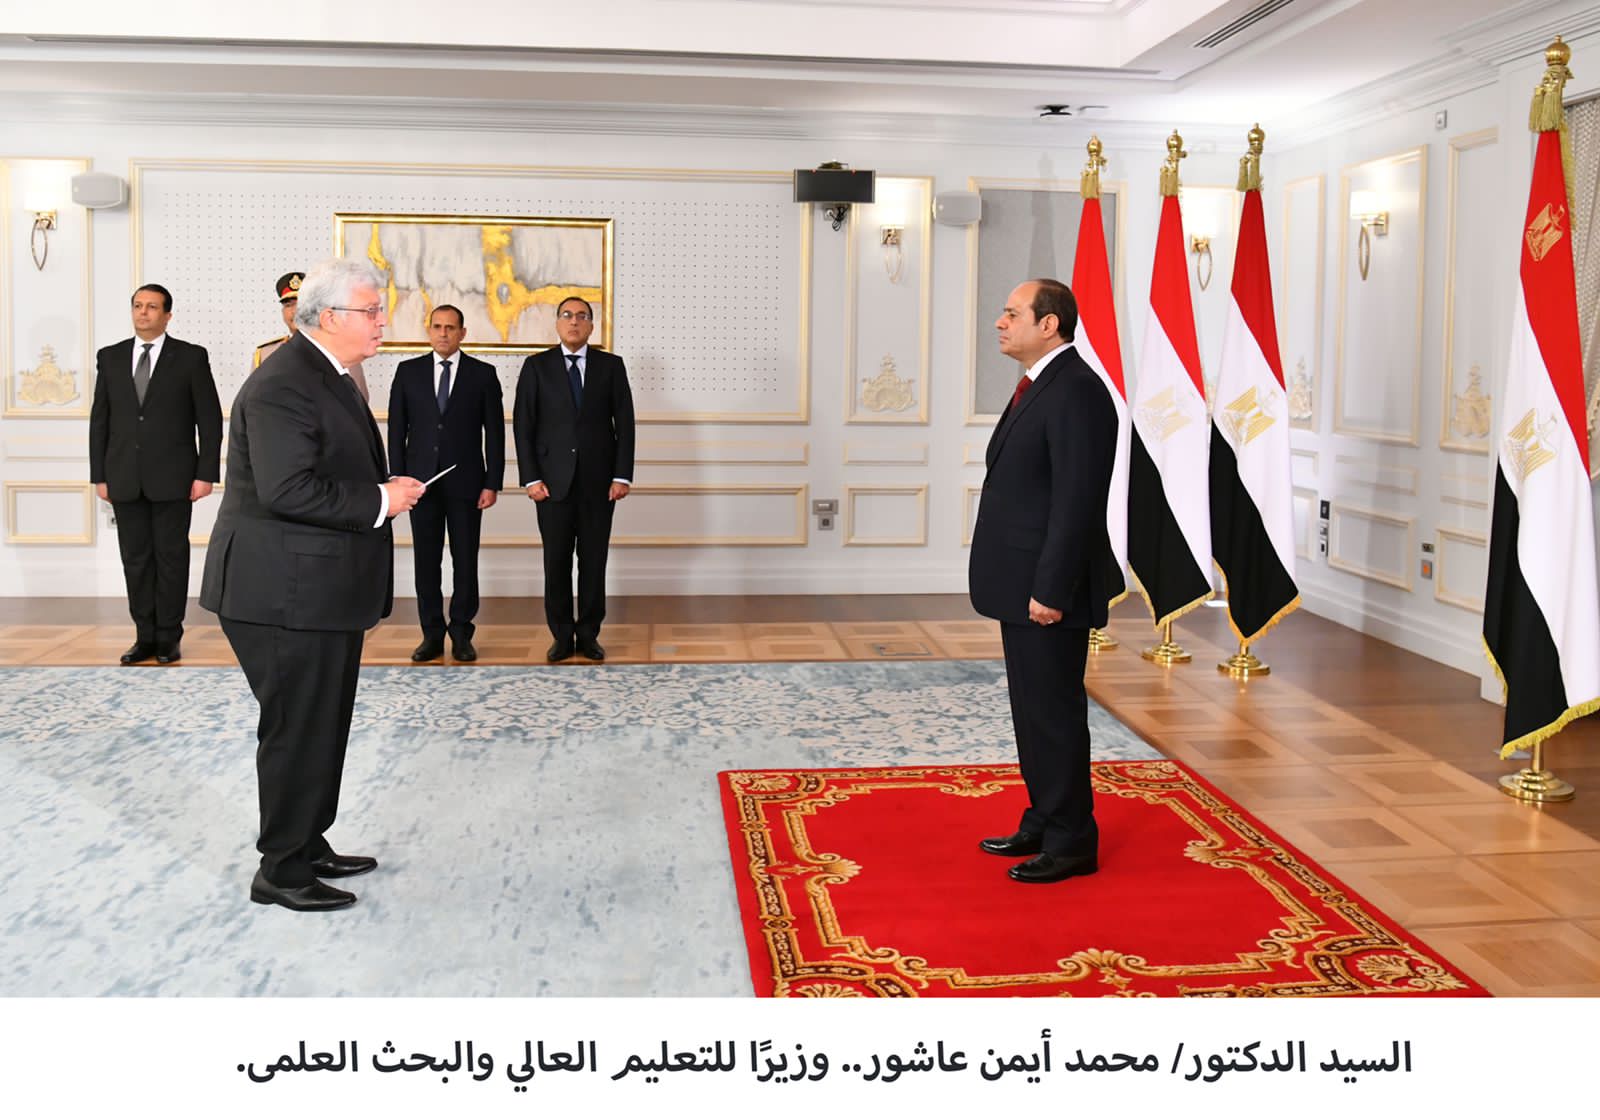  الرئيس السيسي يشهد أداء الوزراء الجُدد اليمين الدستورية 